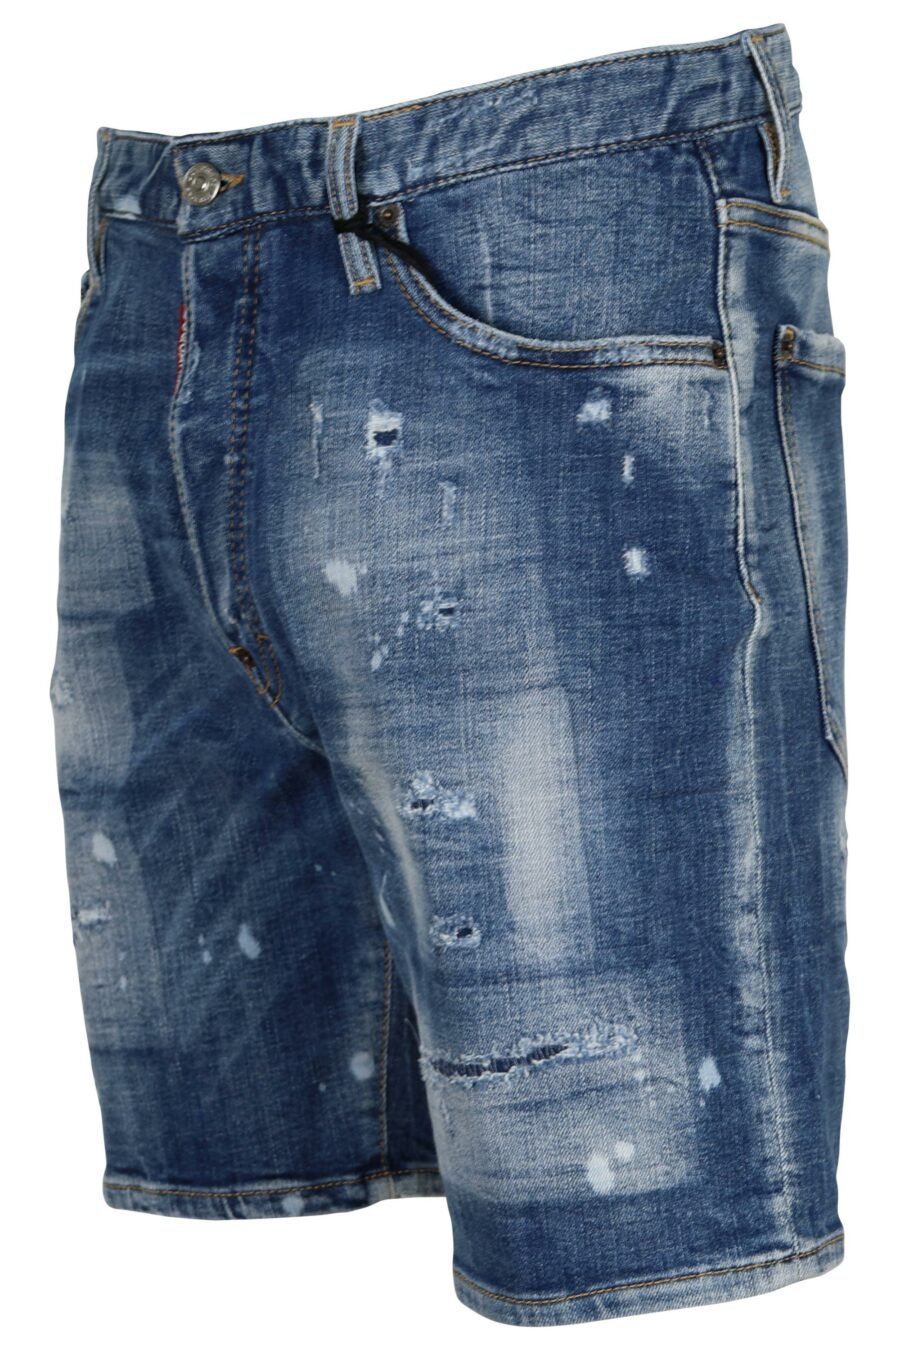 Pantalón vaquero corto azul claro "marine short" con rotos y desgastado - 8054148340193 1